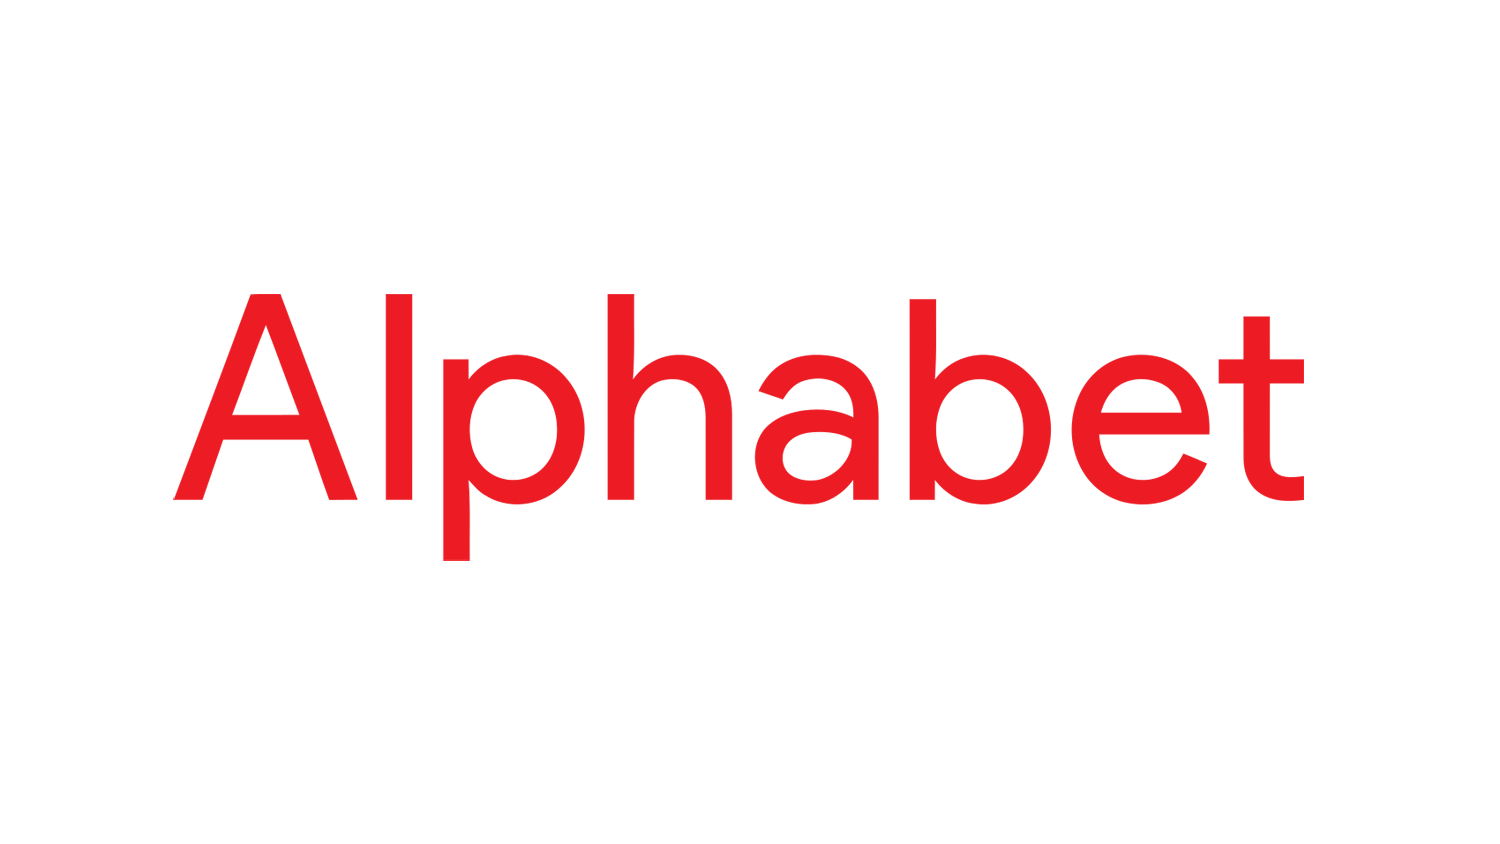 Alphabet Inc logo vector